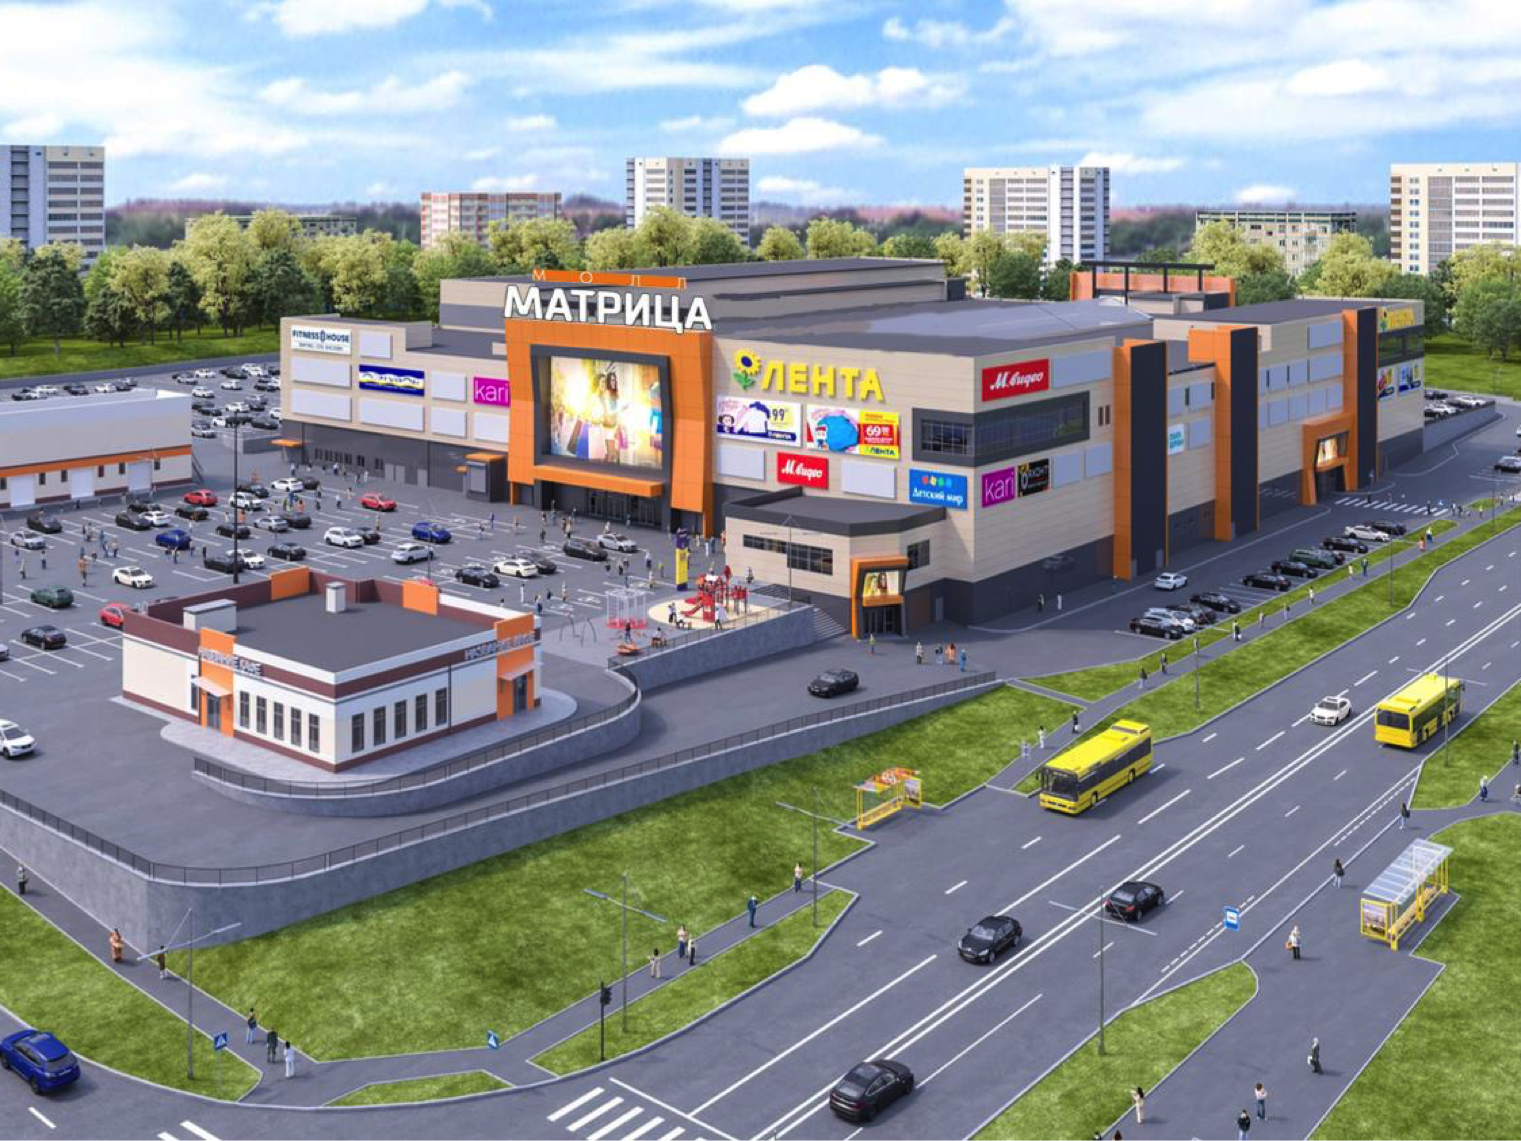 Матрица, торгово-развлекательный центр в Ижевске